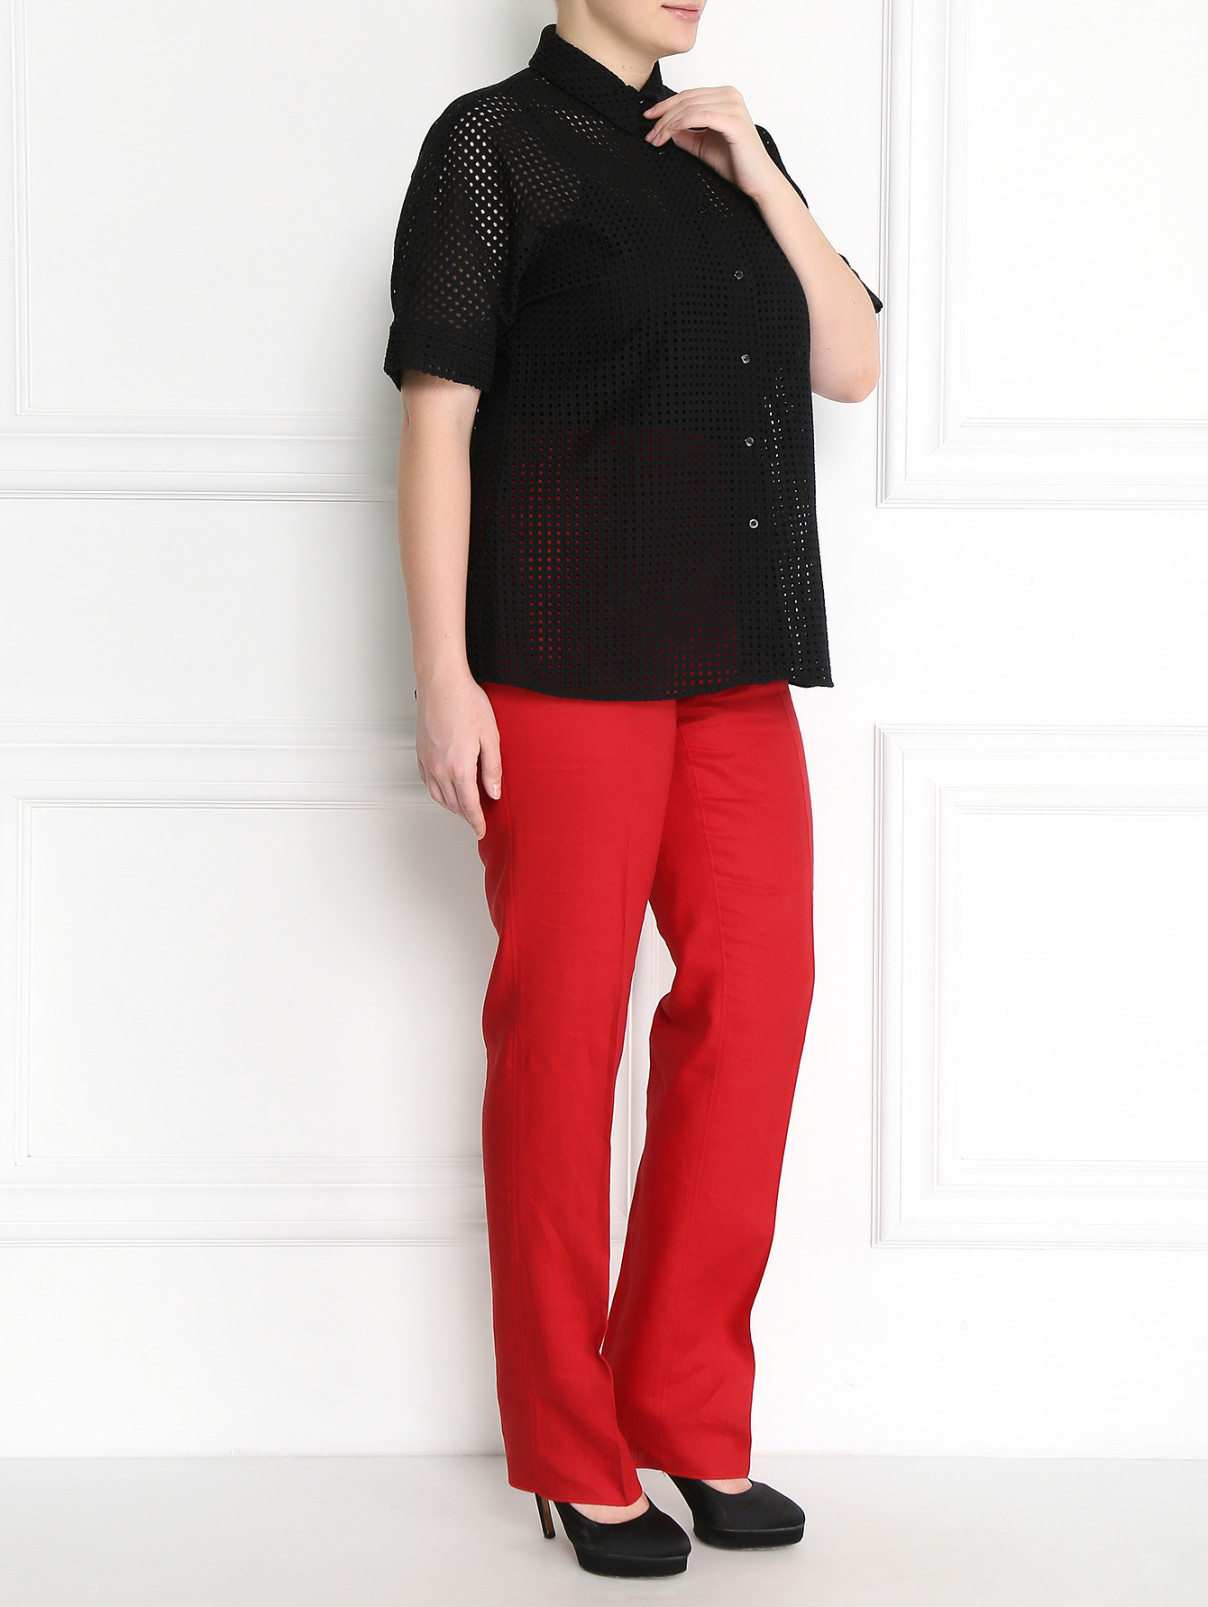 Блуза из хлопка Marina Sport  –  Модель Общий вид  – Цвет:  Черный